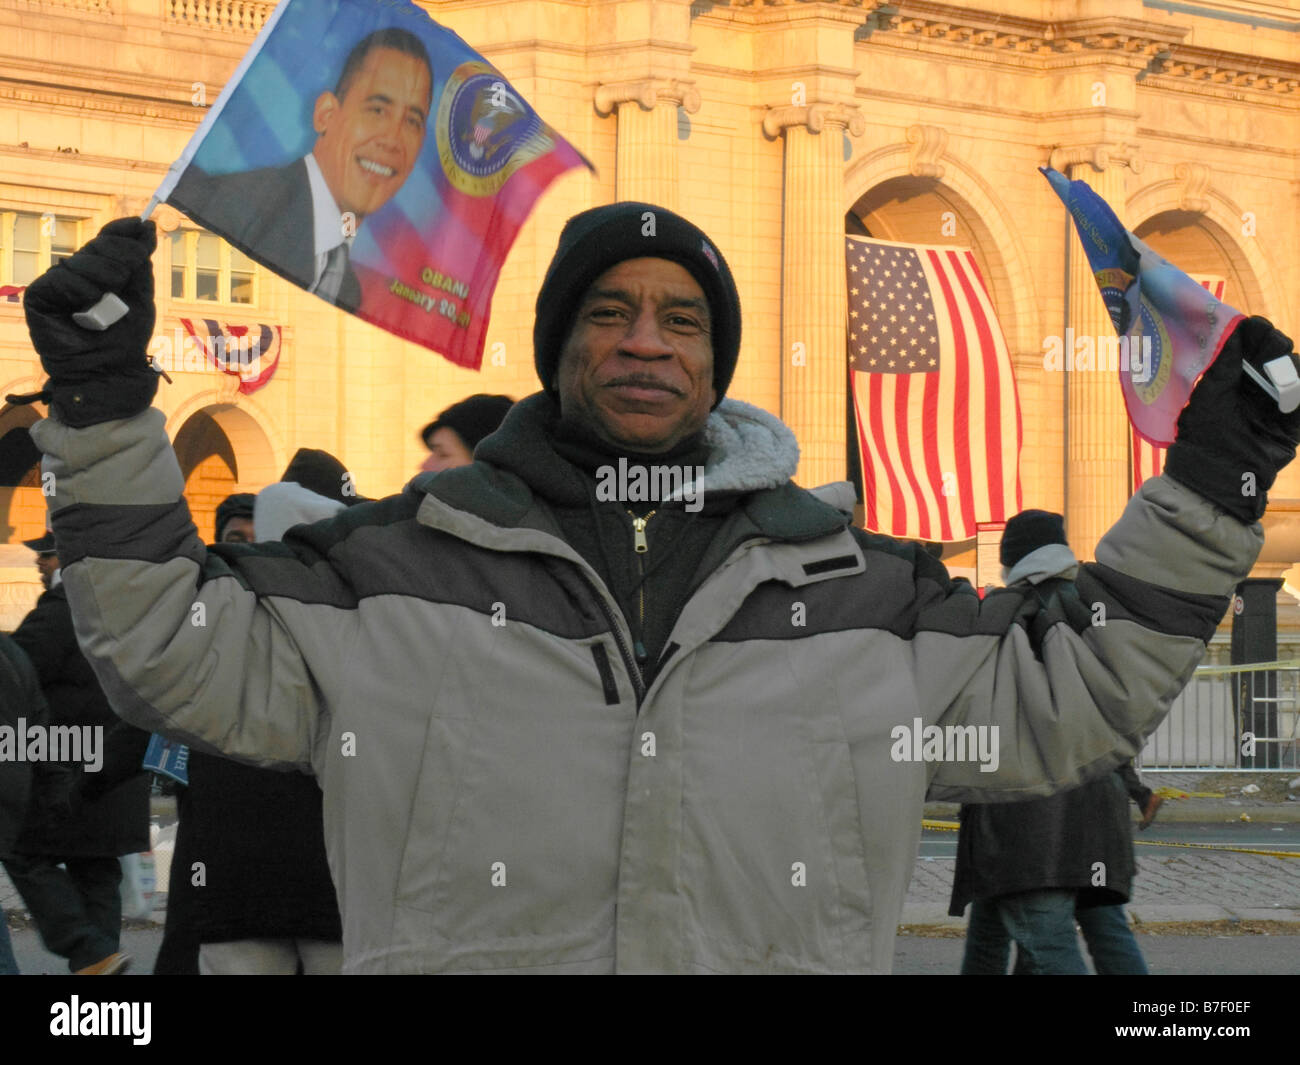 Afrikanisch-amerikanischer Mann feiert die Amtseinführung von Barack Obama, Amerikas erster schwarzer Präsident vor der Union Station. Stockfoto